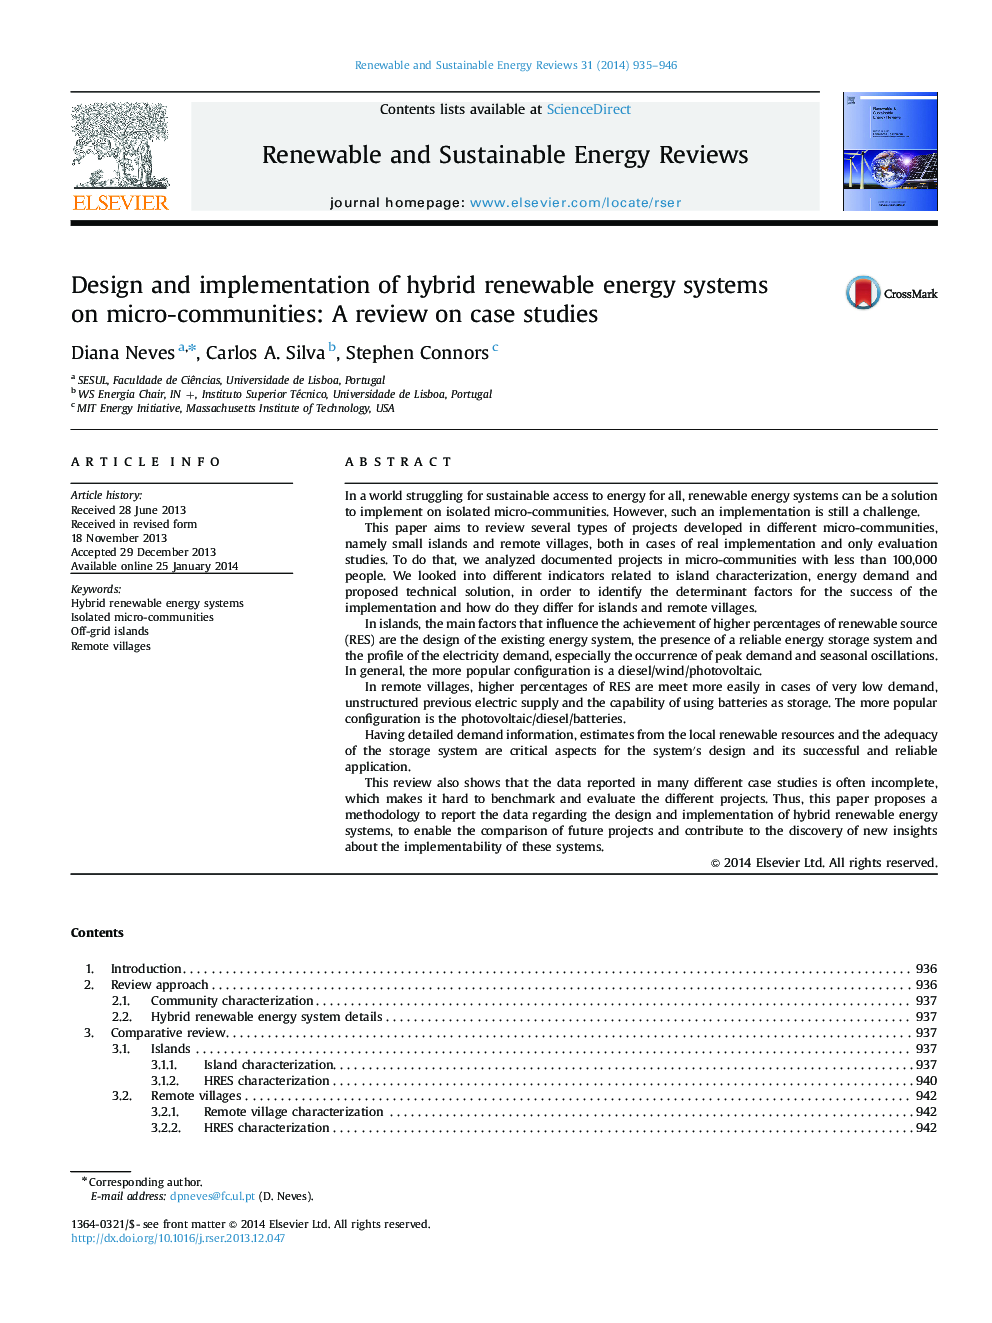 طراحی و پیاده سازی سیستم های انرژی تجدید پذیر ترکیبی در محیط های کوچک: بررسی در مورد مطالعات موردی 